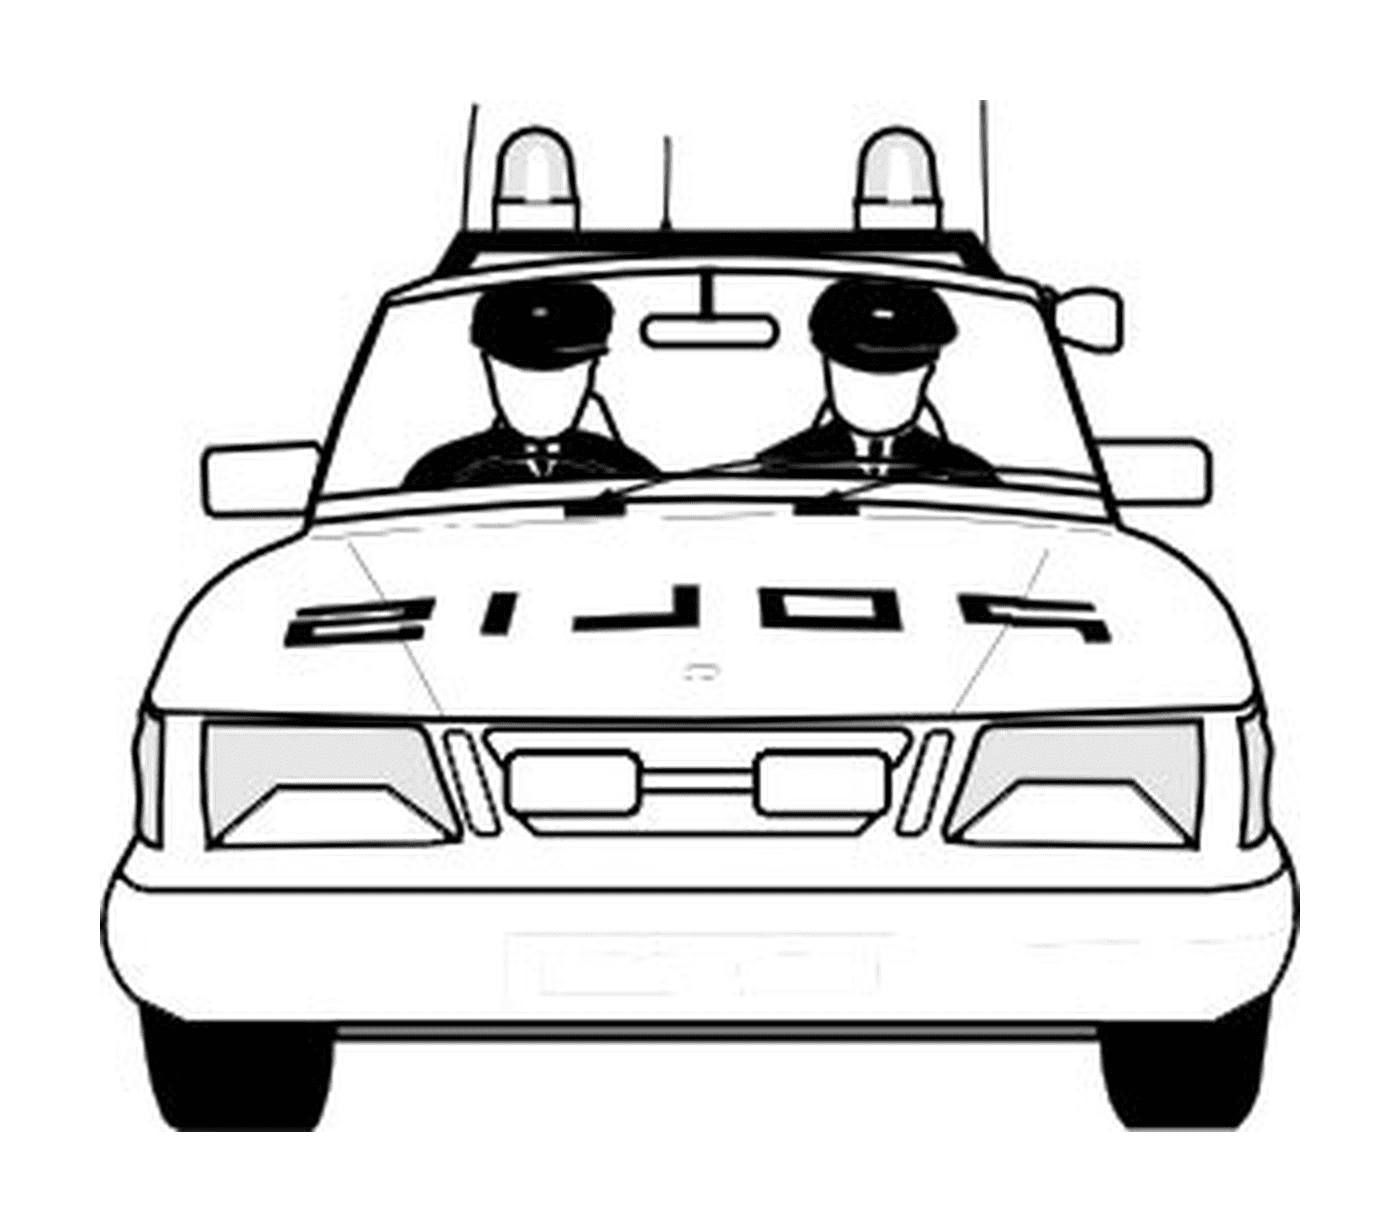  Auto della polizia, due agenti sul retro 